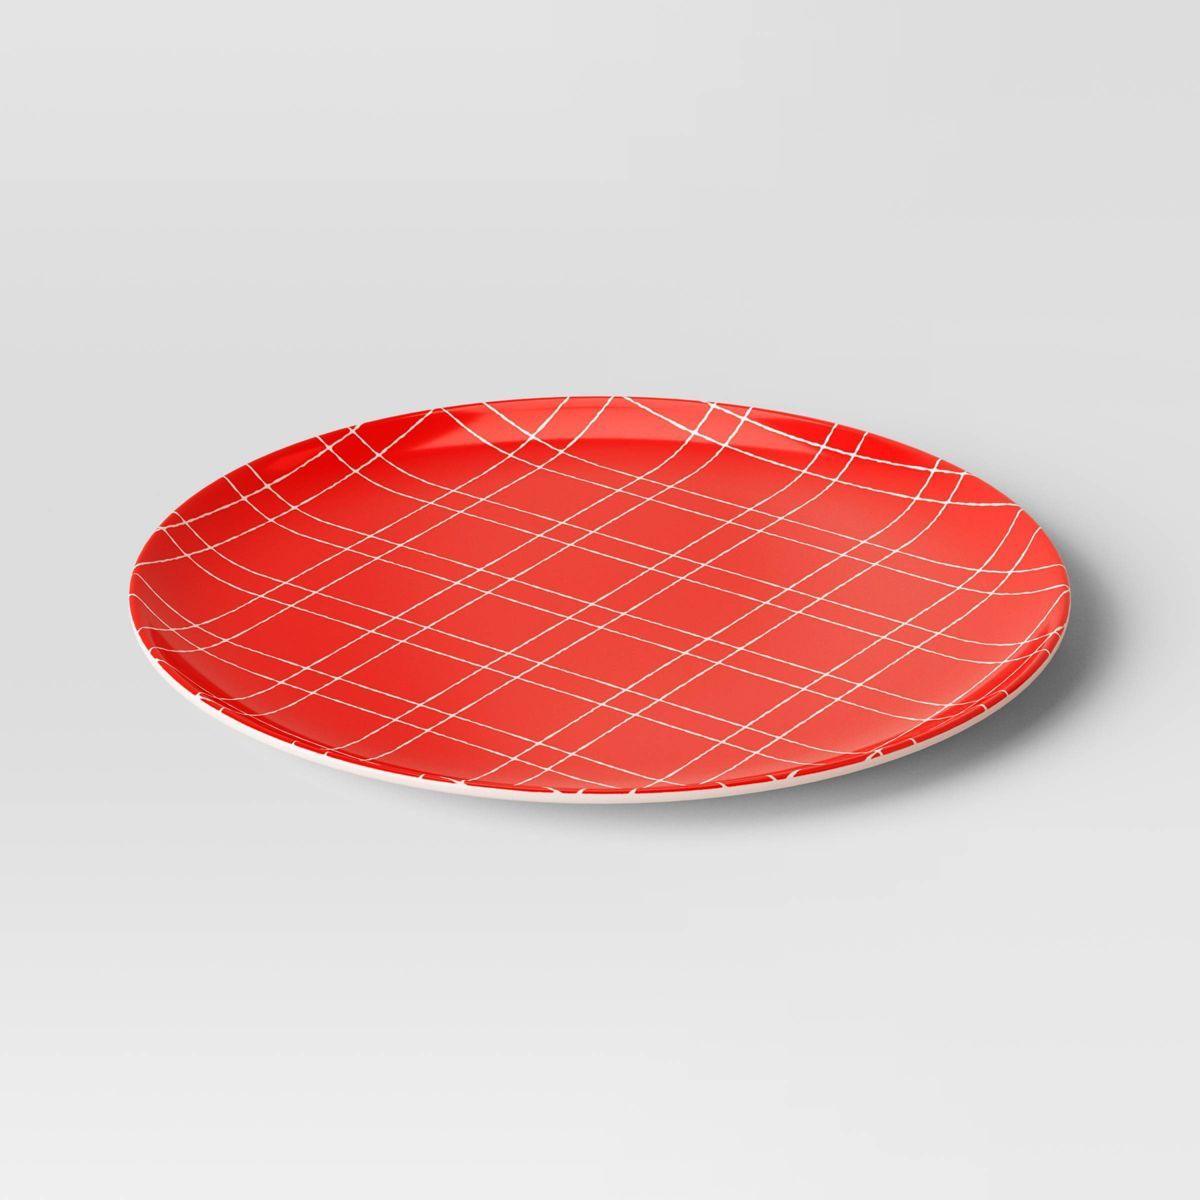 10" Christmas Melamine Plaid Dinner Plate Red - Wondershop™ | Target